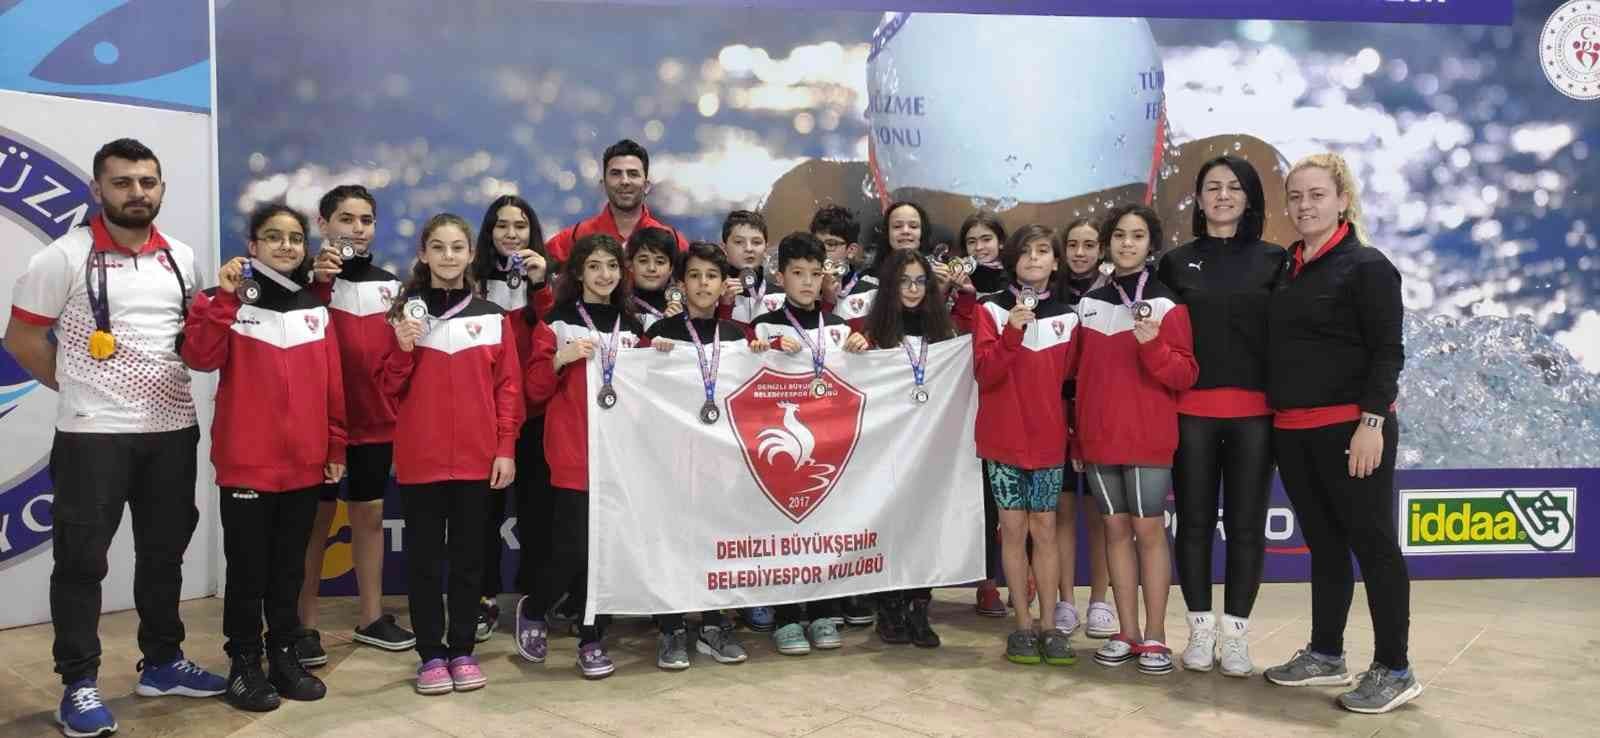 Büyükşehirde Türkiye Şampiyonluğu sevinci #denizli